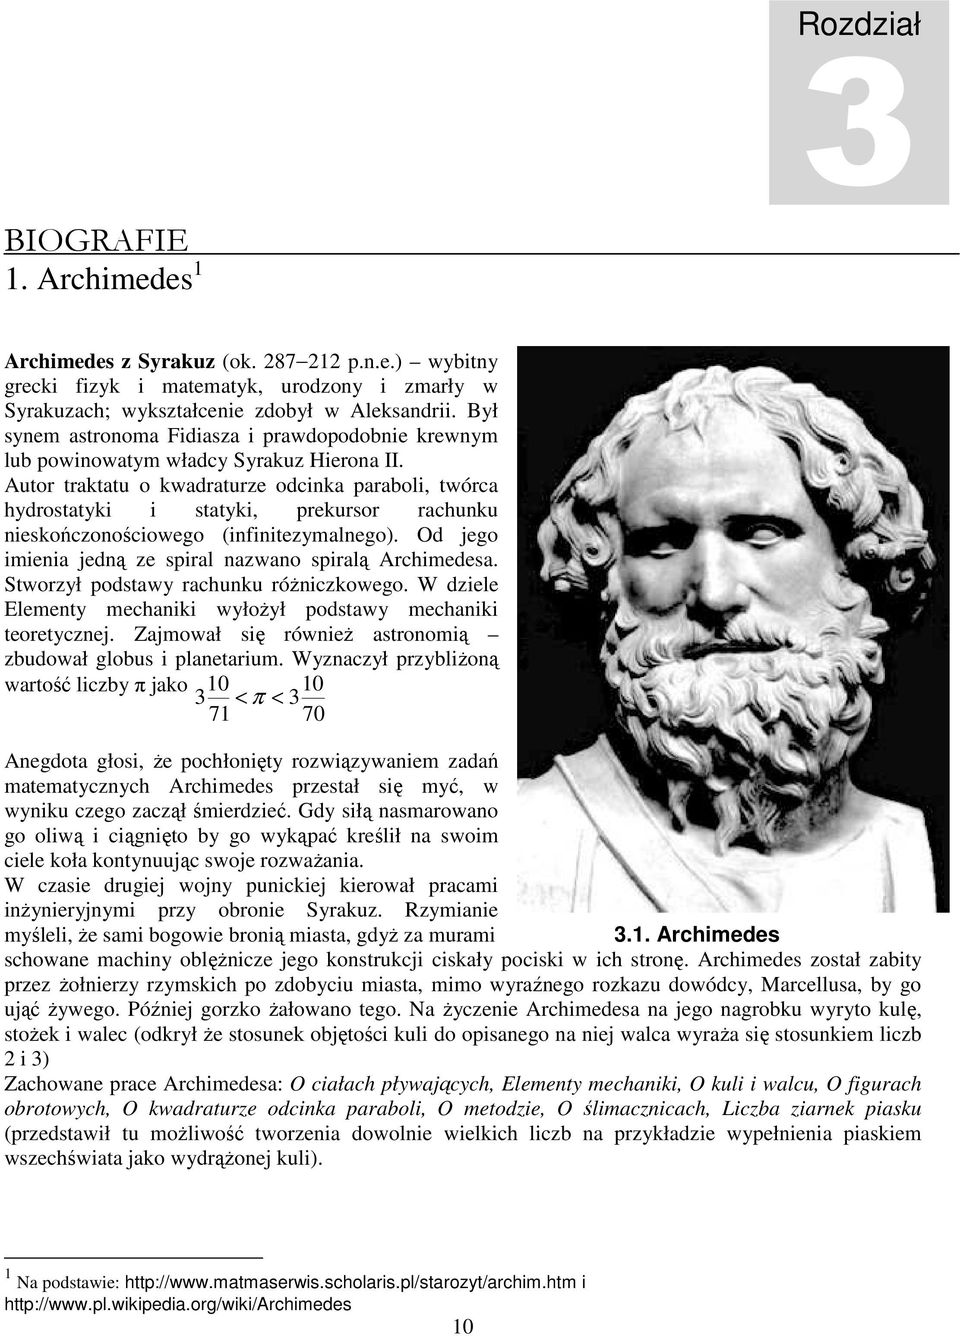 Autor traktatu o kwadraturze odcinka paraboli, twórca hydrostatyki i statyki, prekursor rachunku nieskończonościowego (infinitezymalnego). Od jego imienia jedną ze spiral nazwano spiralą Archimedesa.